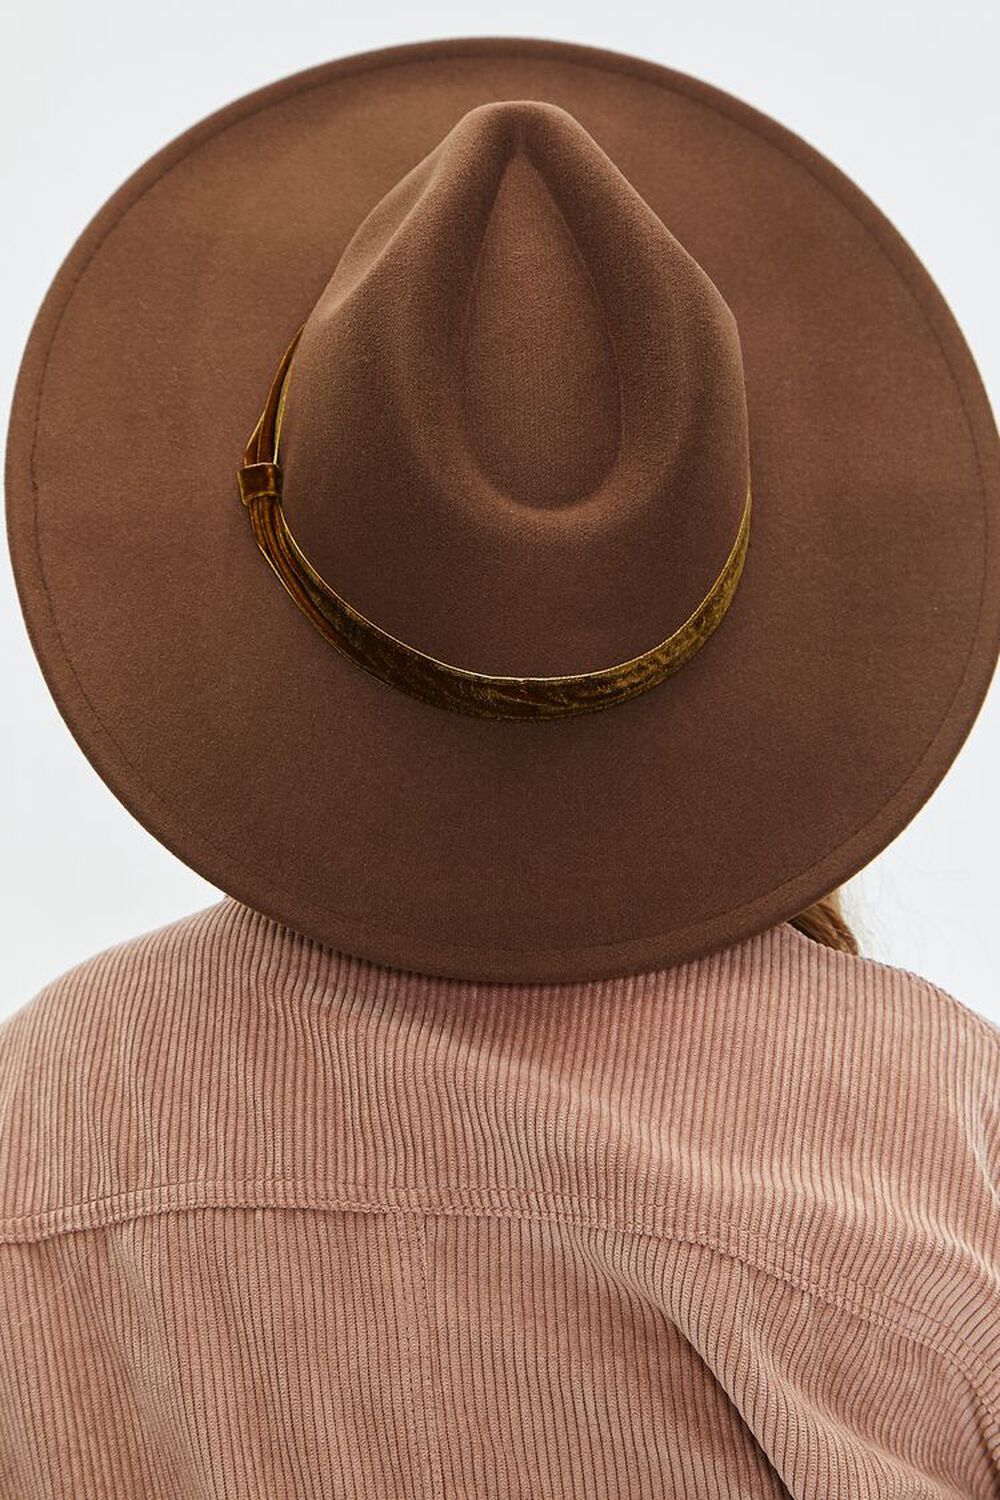 Pinched Velvet-Trim Cowboy Hat | Forever 21 (US)